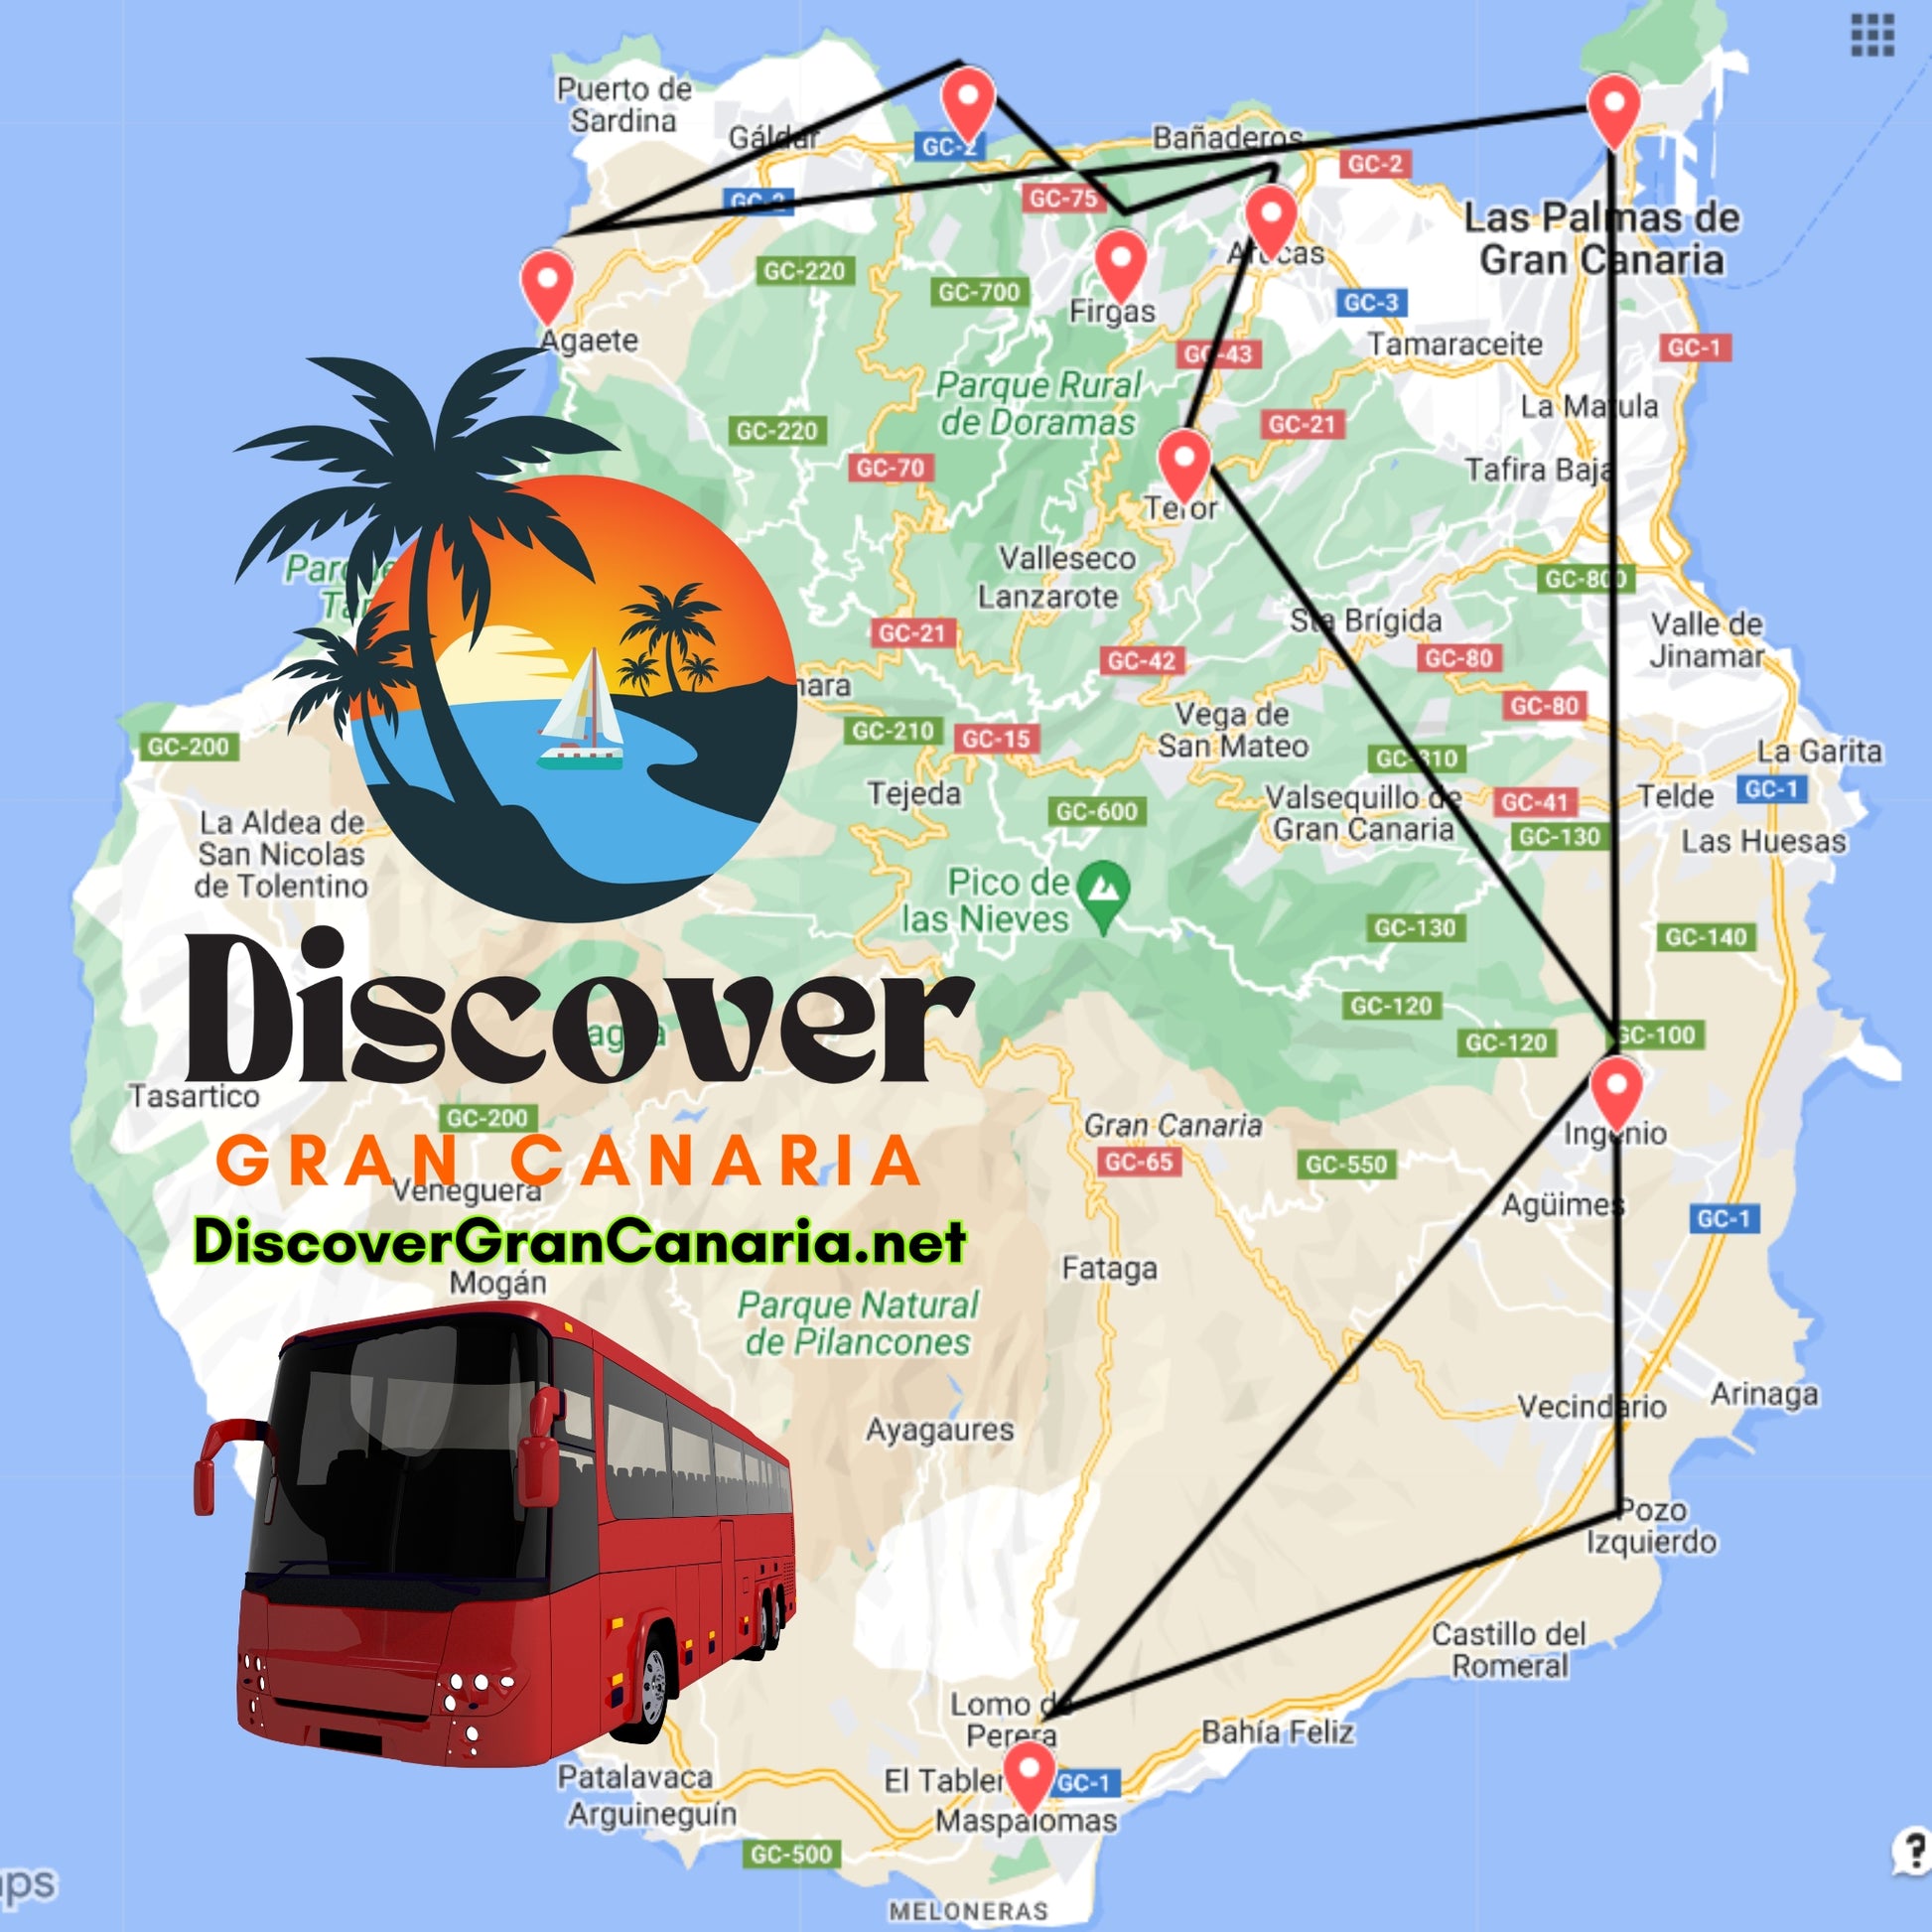 bus tour gran canaria - landscapes